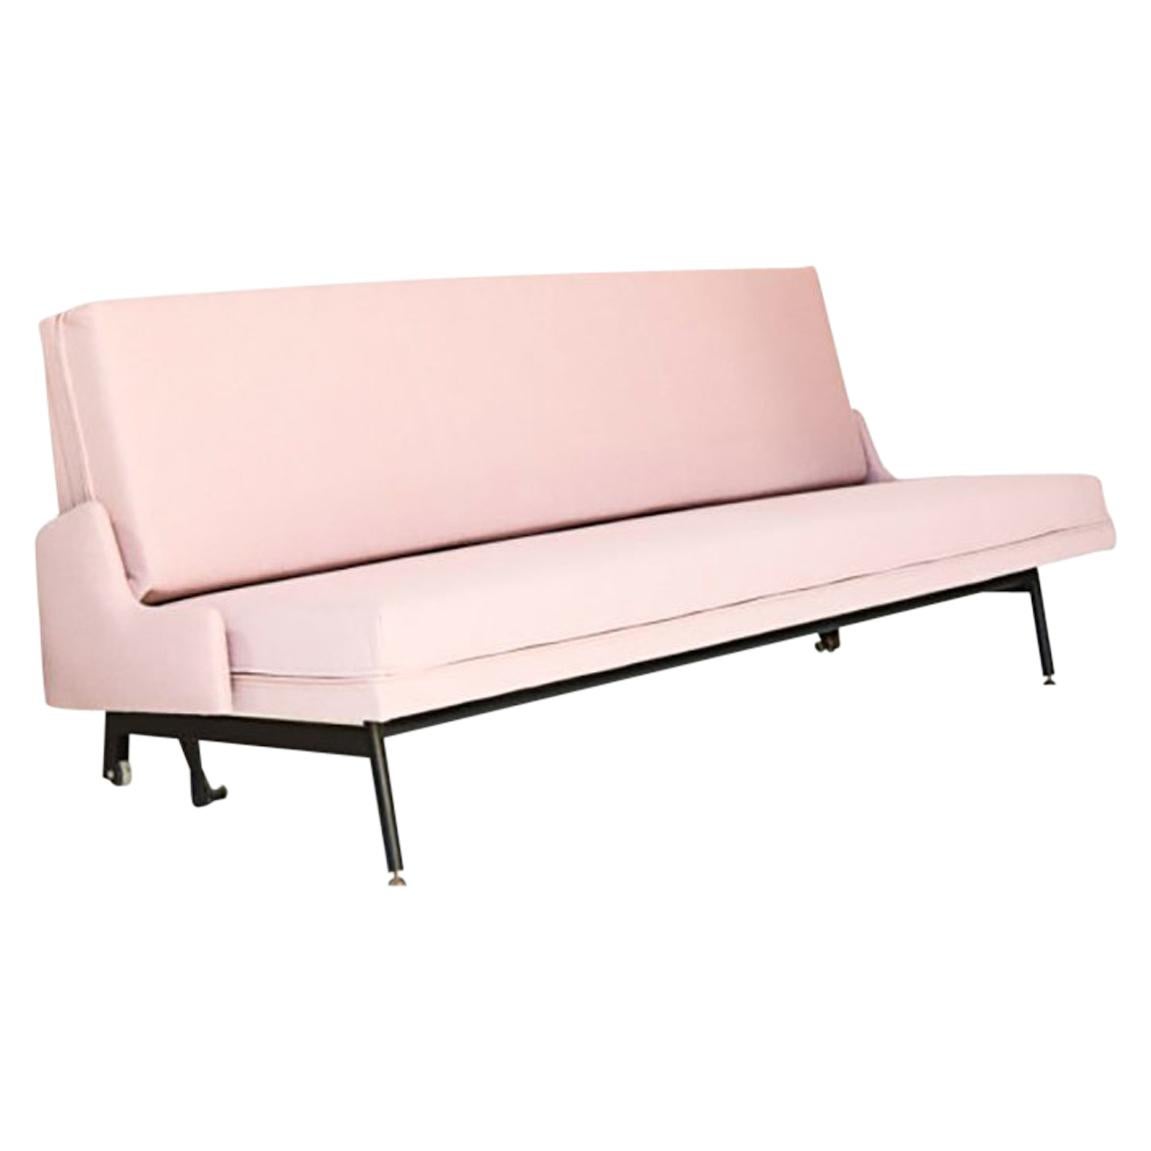 Pierre Guariche, Rare Sofa Bed, France, 1960